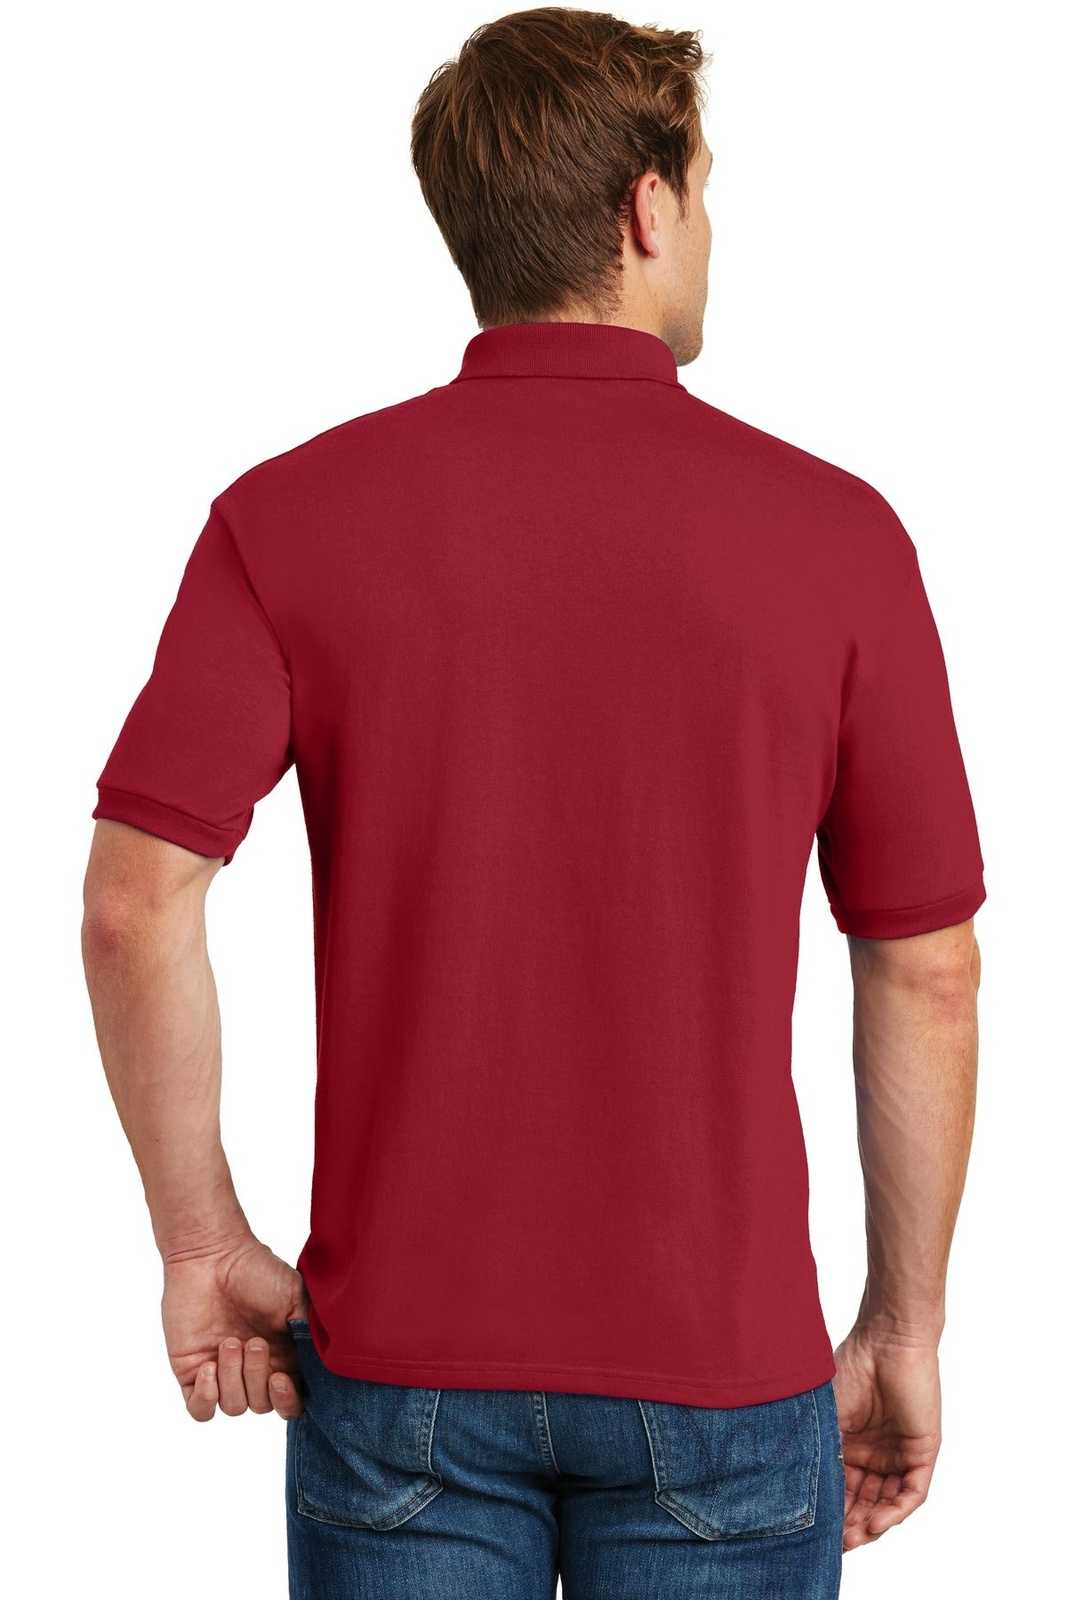 Hanes 054X Ecosmart 5.2-Ounce Jersey Knit Sport Shirt - Deep Red - HIT a Double